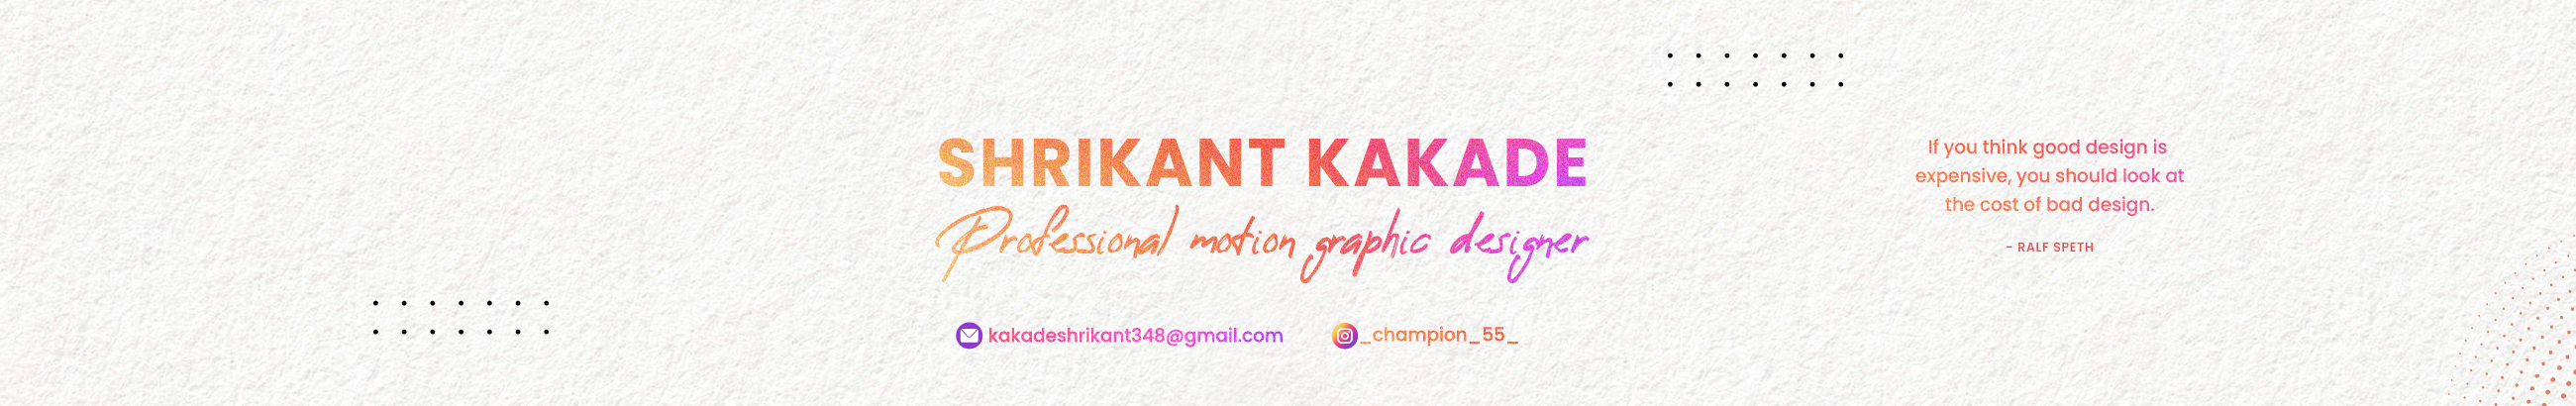 Shrikant Kakade's profile banner